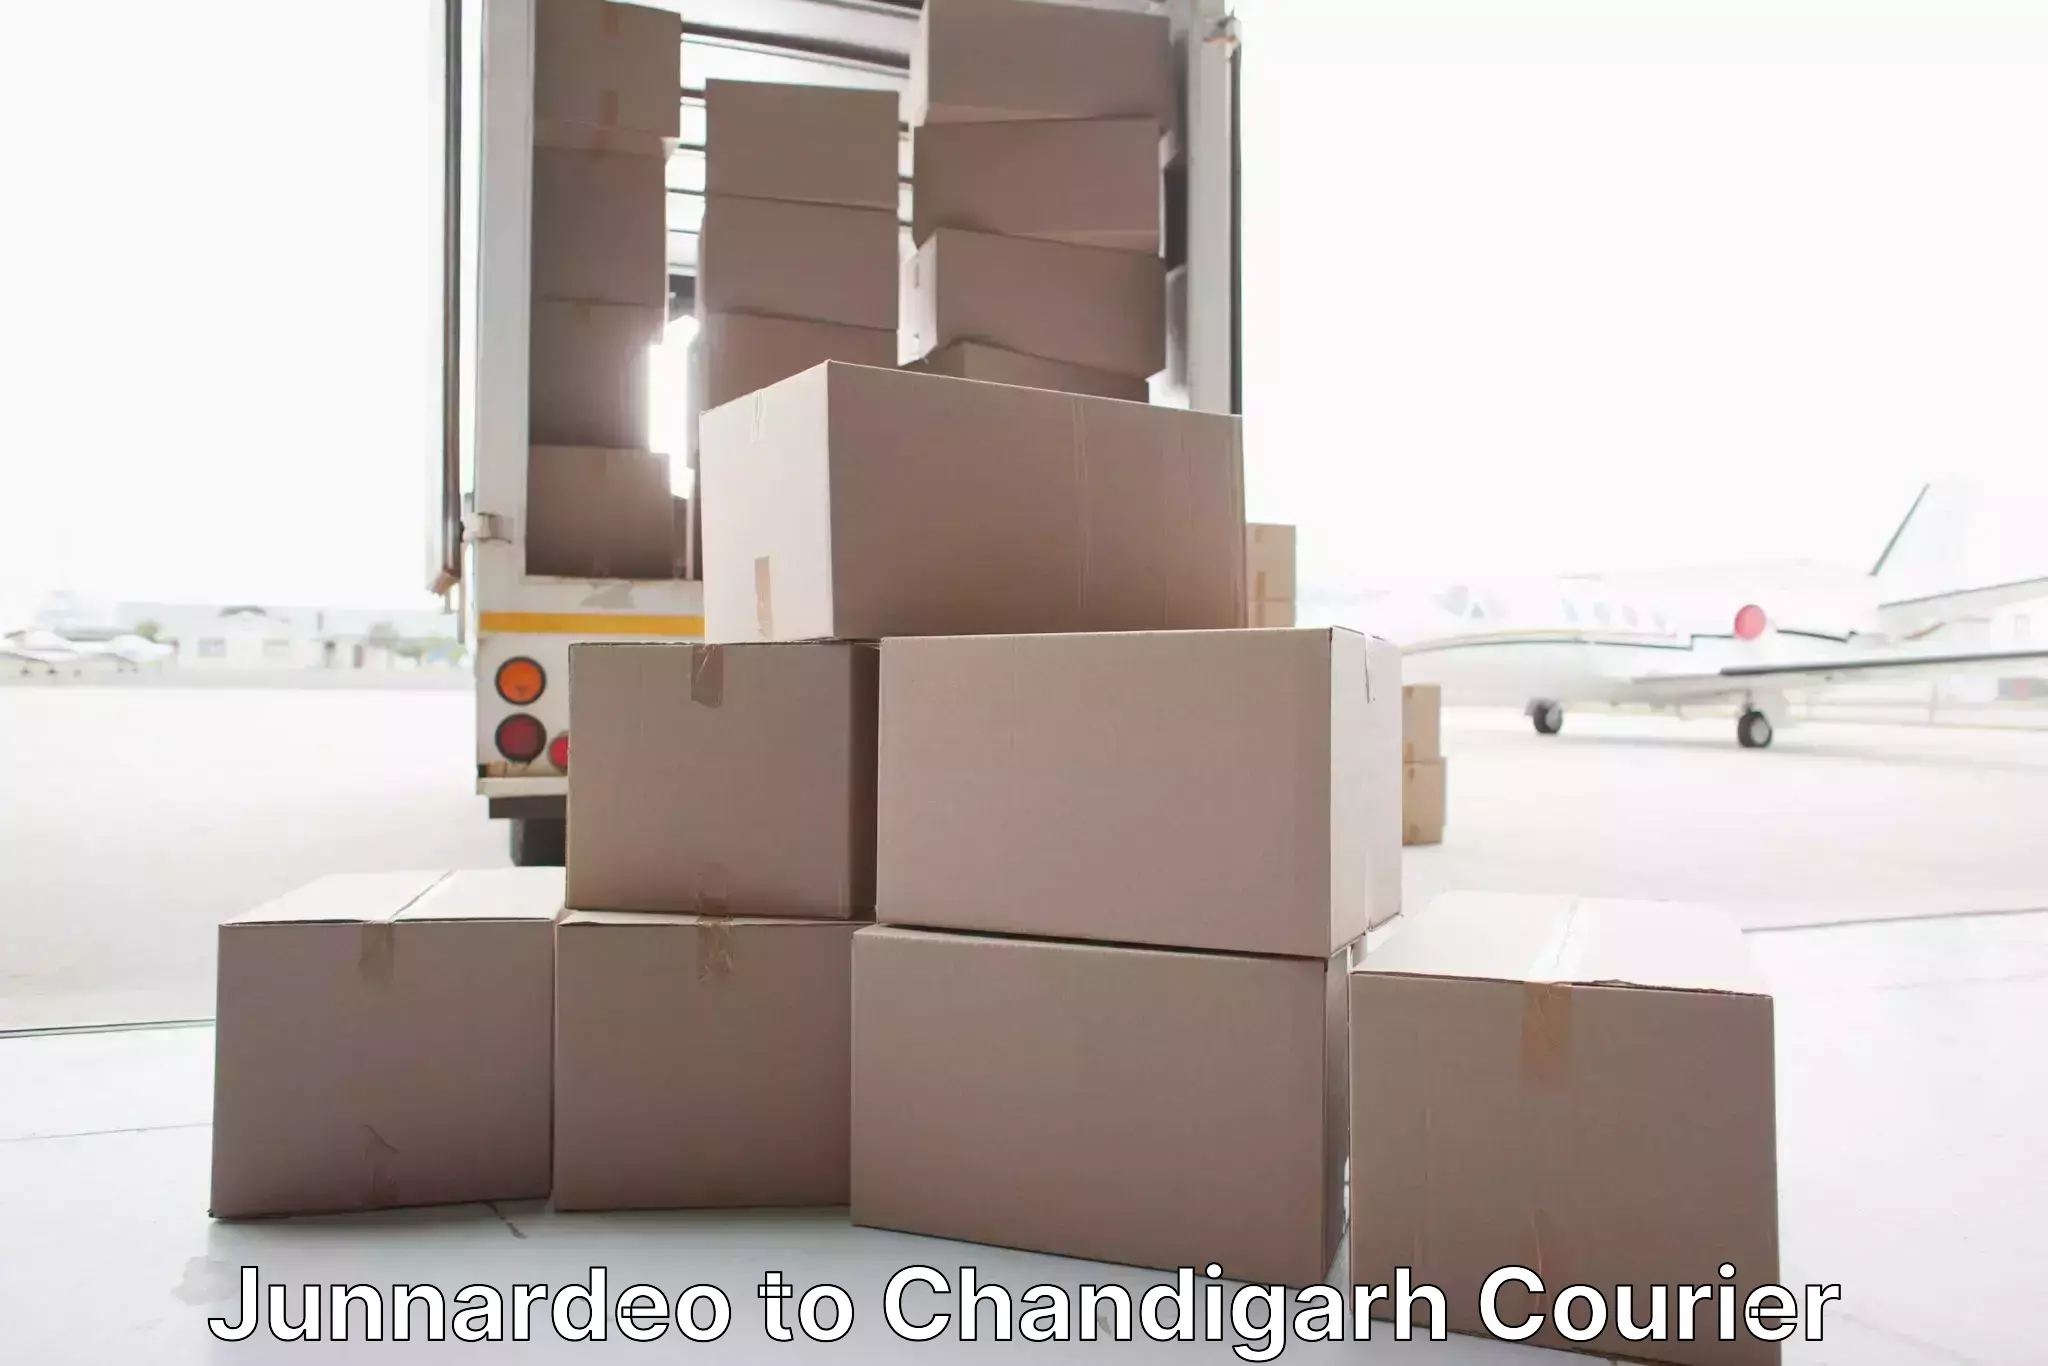 Efficient furniture transport in Junnardeo to Chandigarh